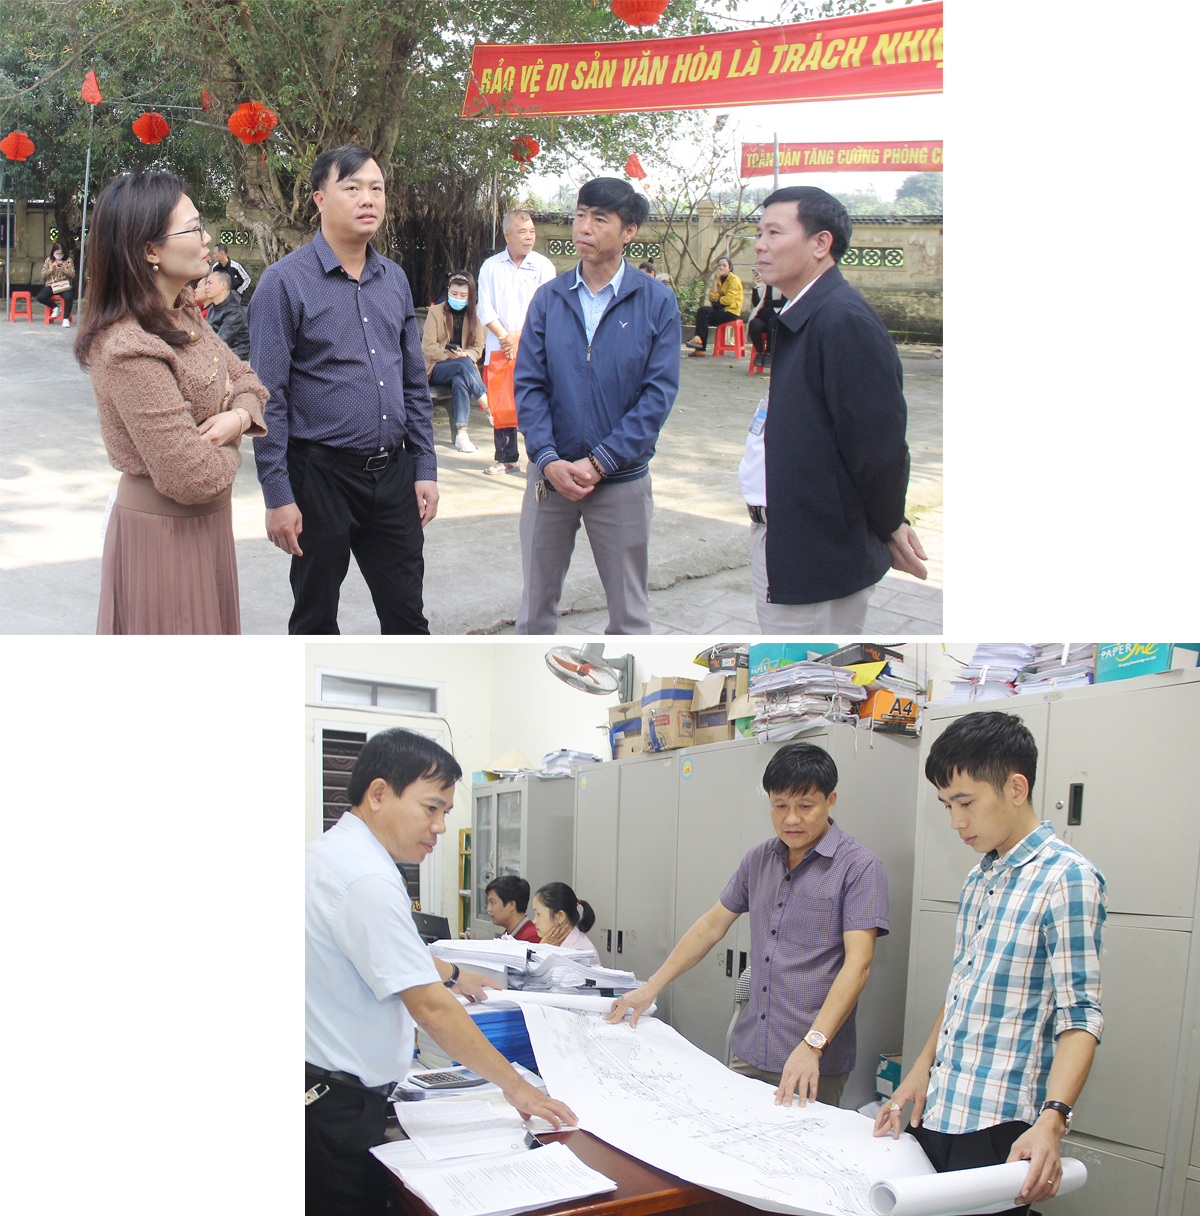 Lãnh đạo huyện Hưng Nguyên khảo sát di tích cần đầu tư tôn tạo trên địa bàn; Cán bộ phòng chuyên môn huyện rà soát các tuyến đường giải phóng mặt bằng và đầu tư.